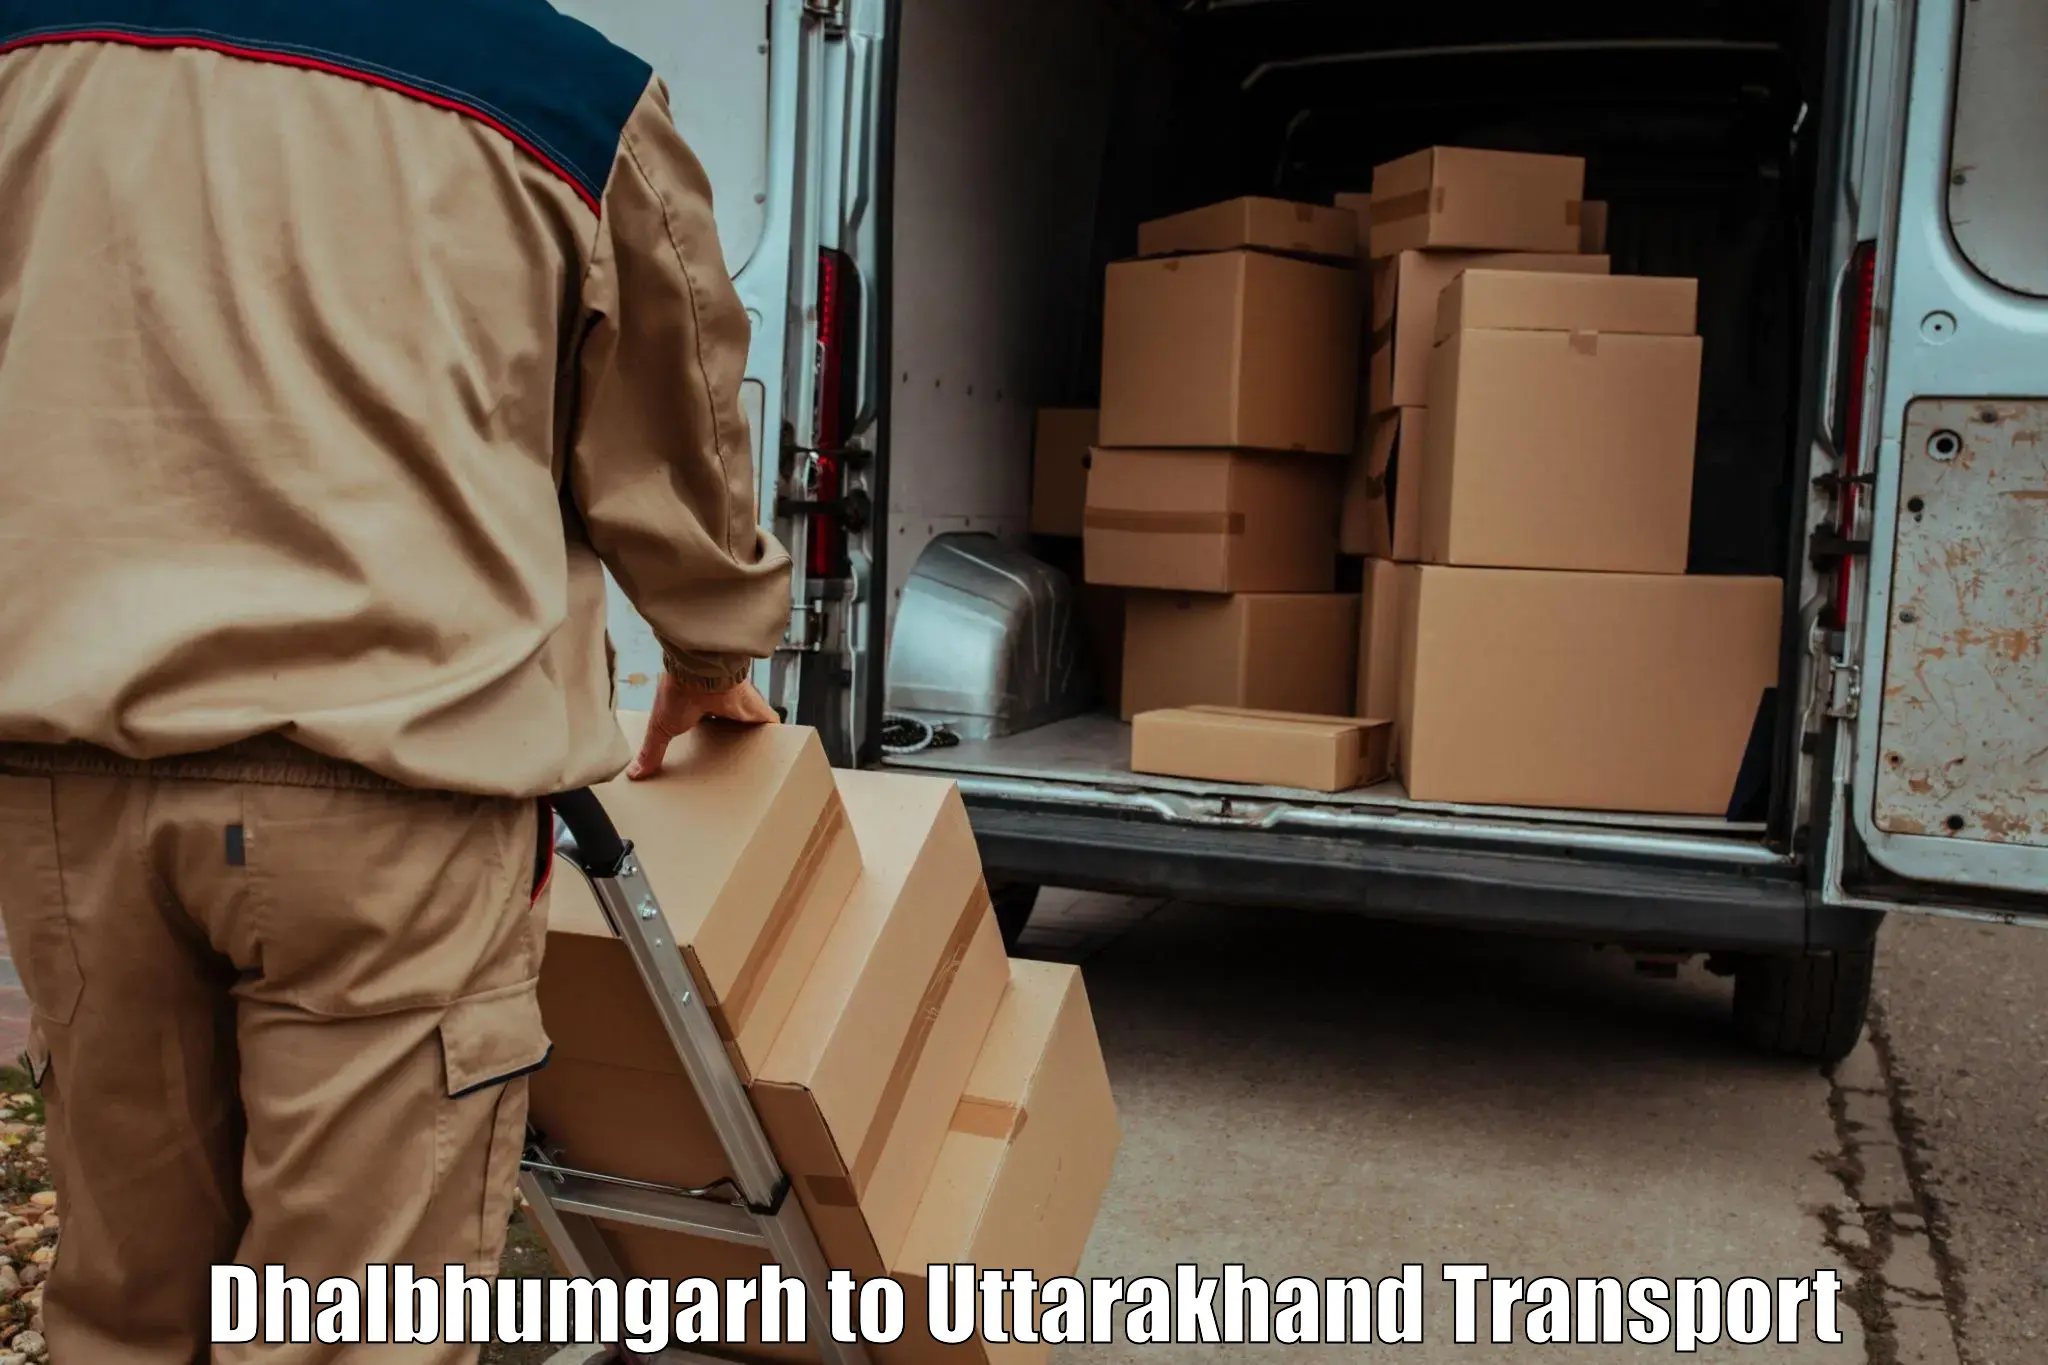 All India transport service in Dhalbhumgarh to Uttarakhand